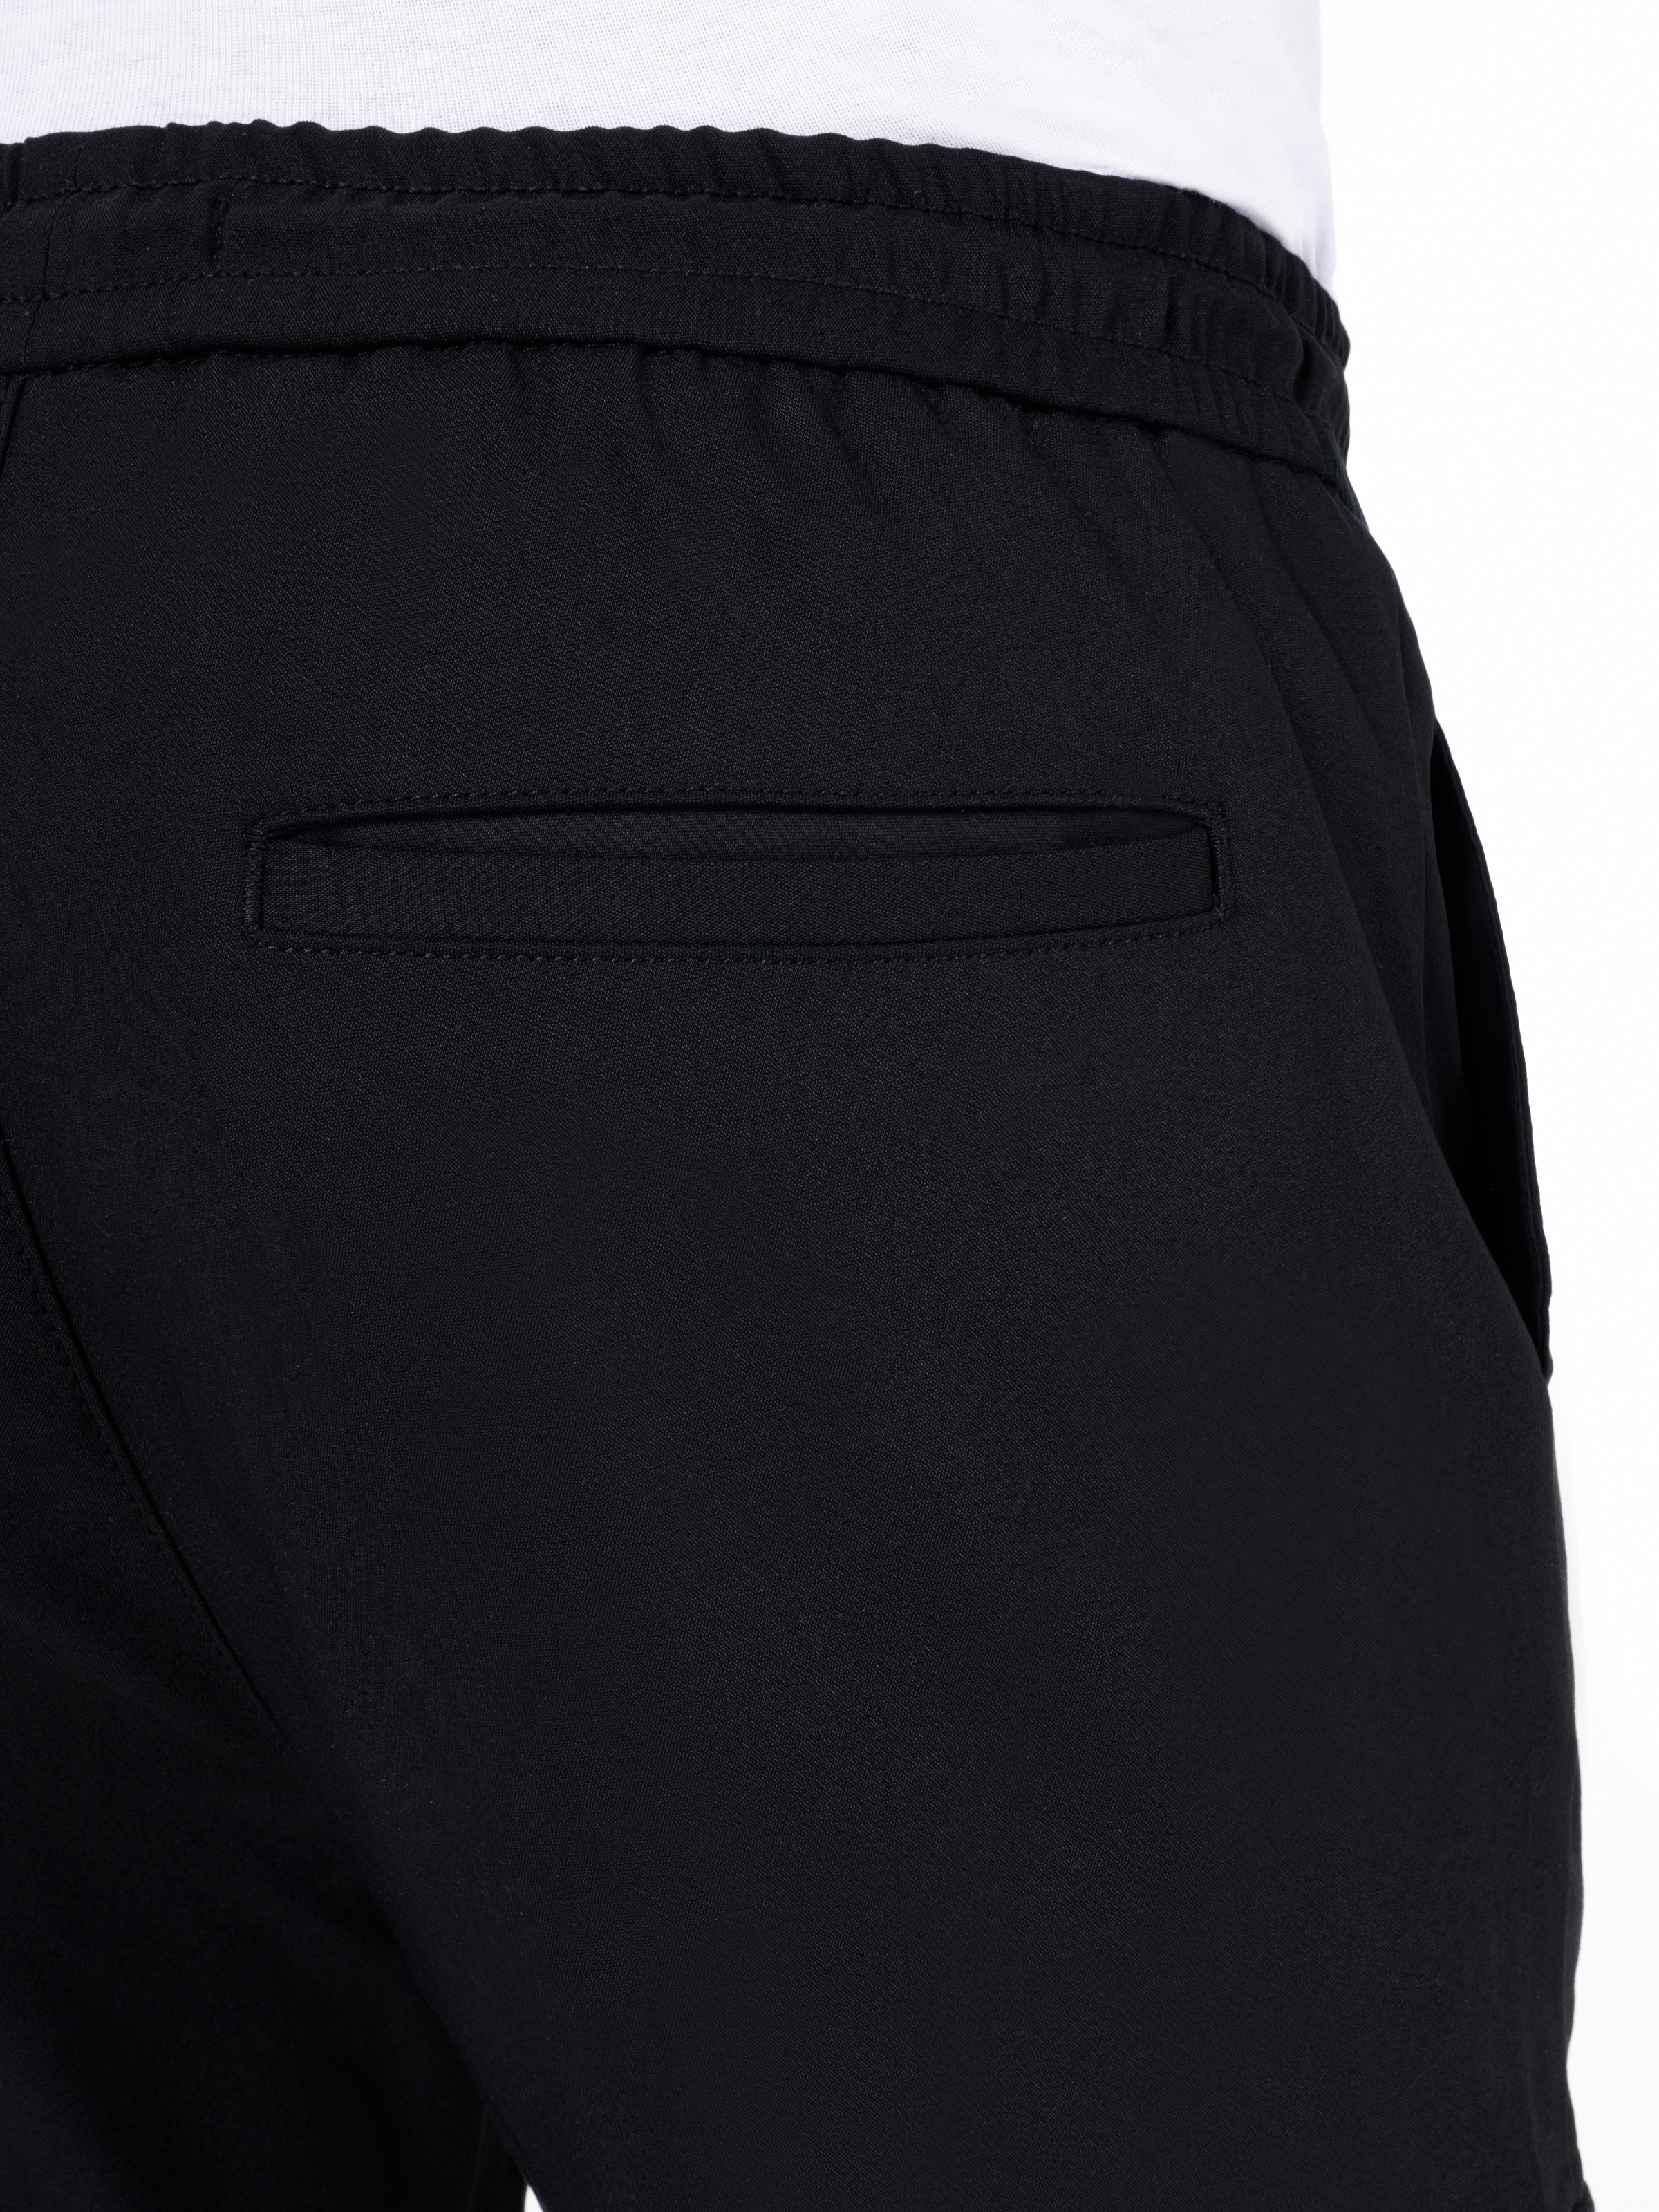 Afișați detalii pentru Pantaloni De Barbati Negru Slim Fit  